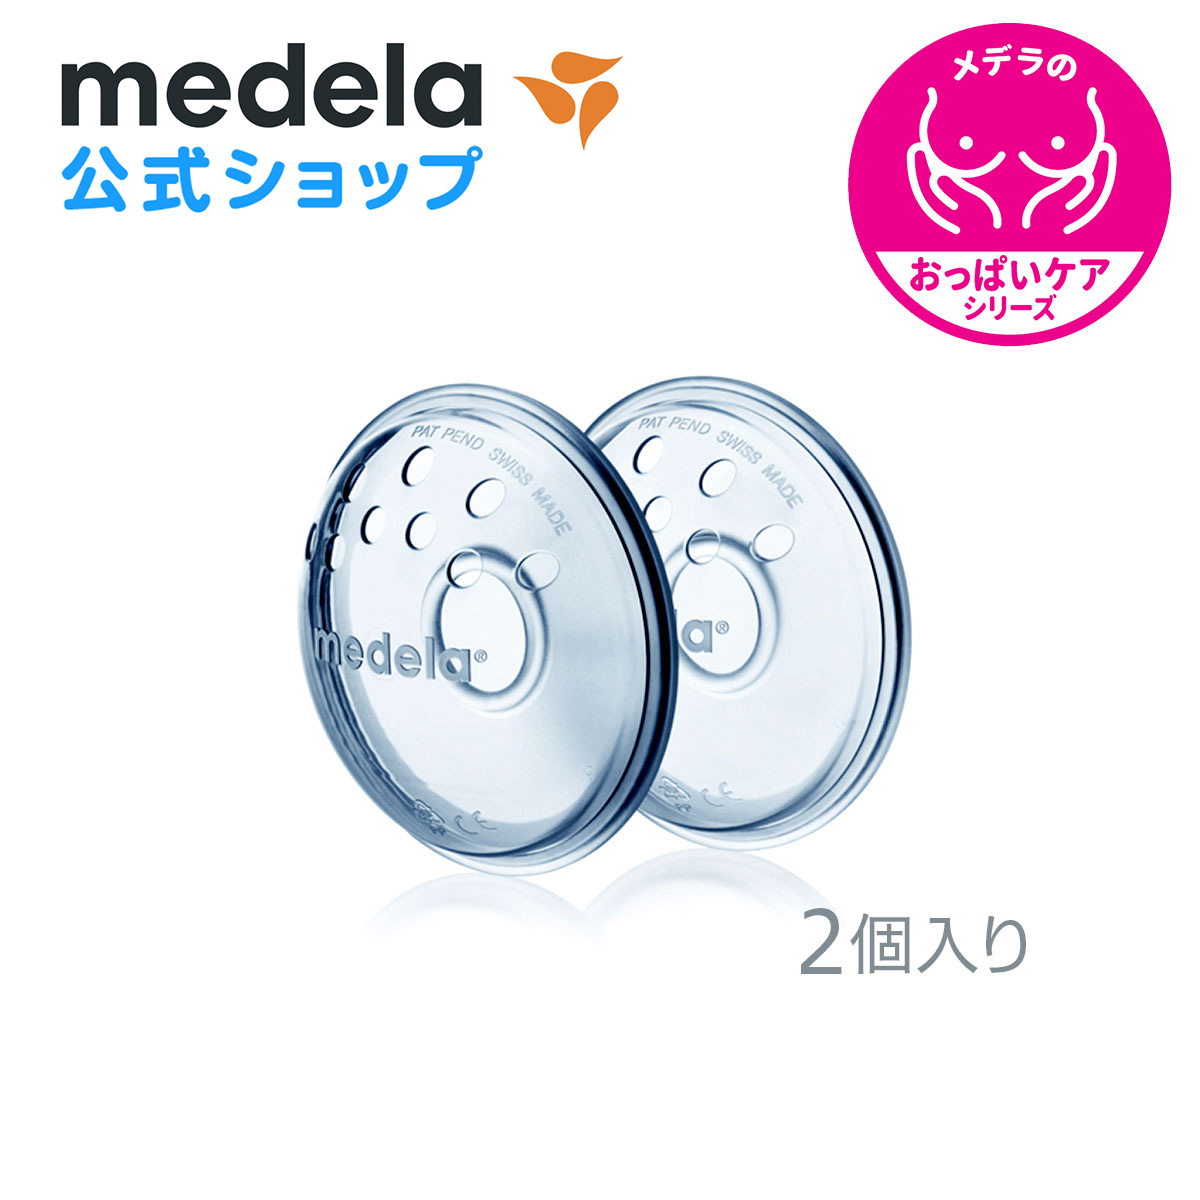 公式 Medela (メデラ) ニップルフォーマー (2個入り) 扁平乳頭 陥没乳頭 2個 授乳 乳首 おっぱいケア medela 母乳育児